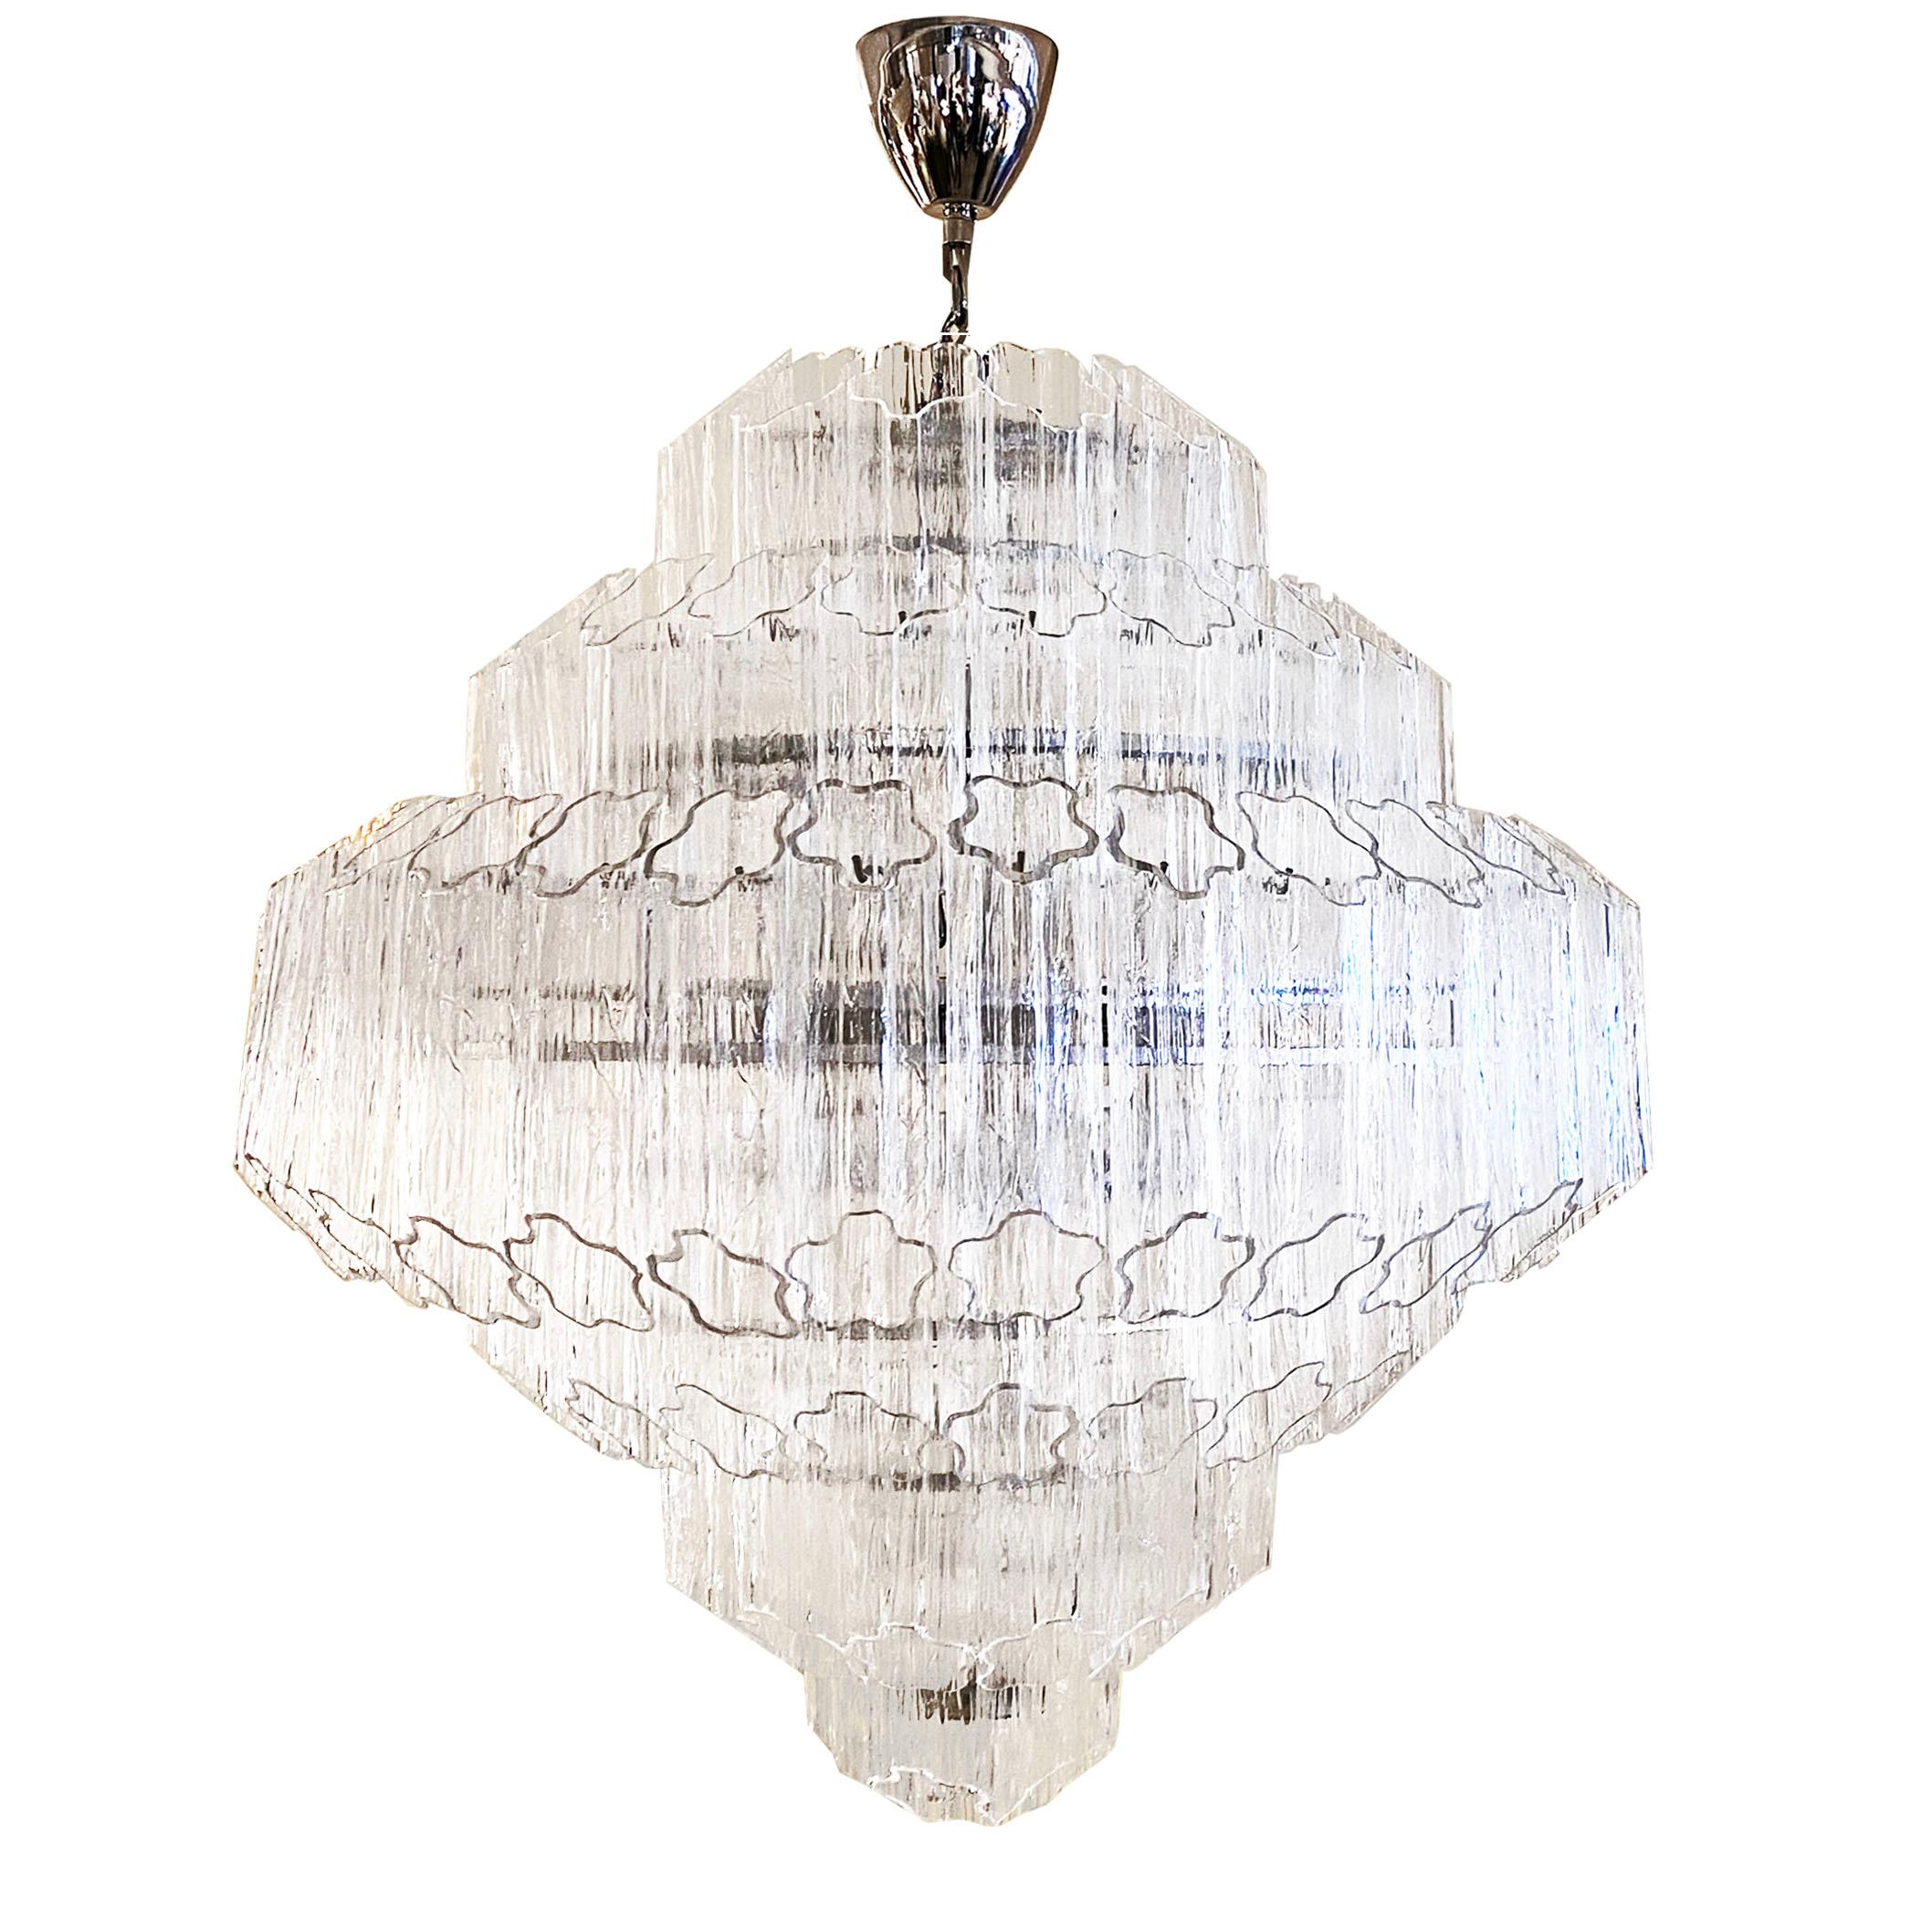 Créé pour apporter une lumière éblouissante et aérienne dans n'importe quel intérieur, ce luminaire organique italien contemporain sur mesure est en verre soufflé de Murano qui ressemble à du cristal. La forme géométrique Art Déco est composée de